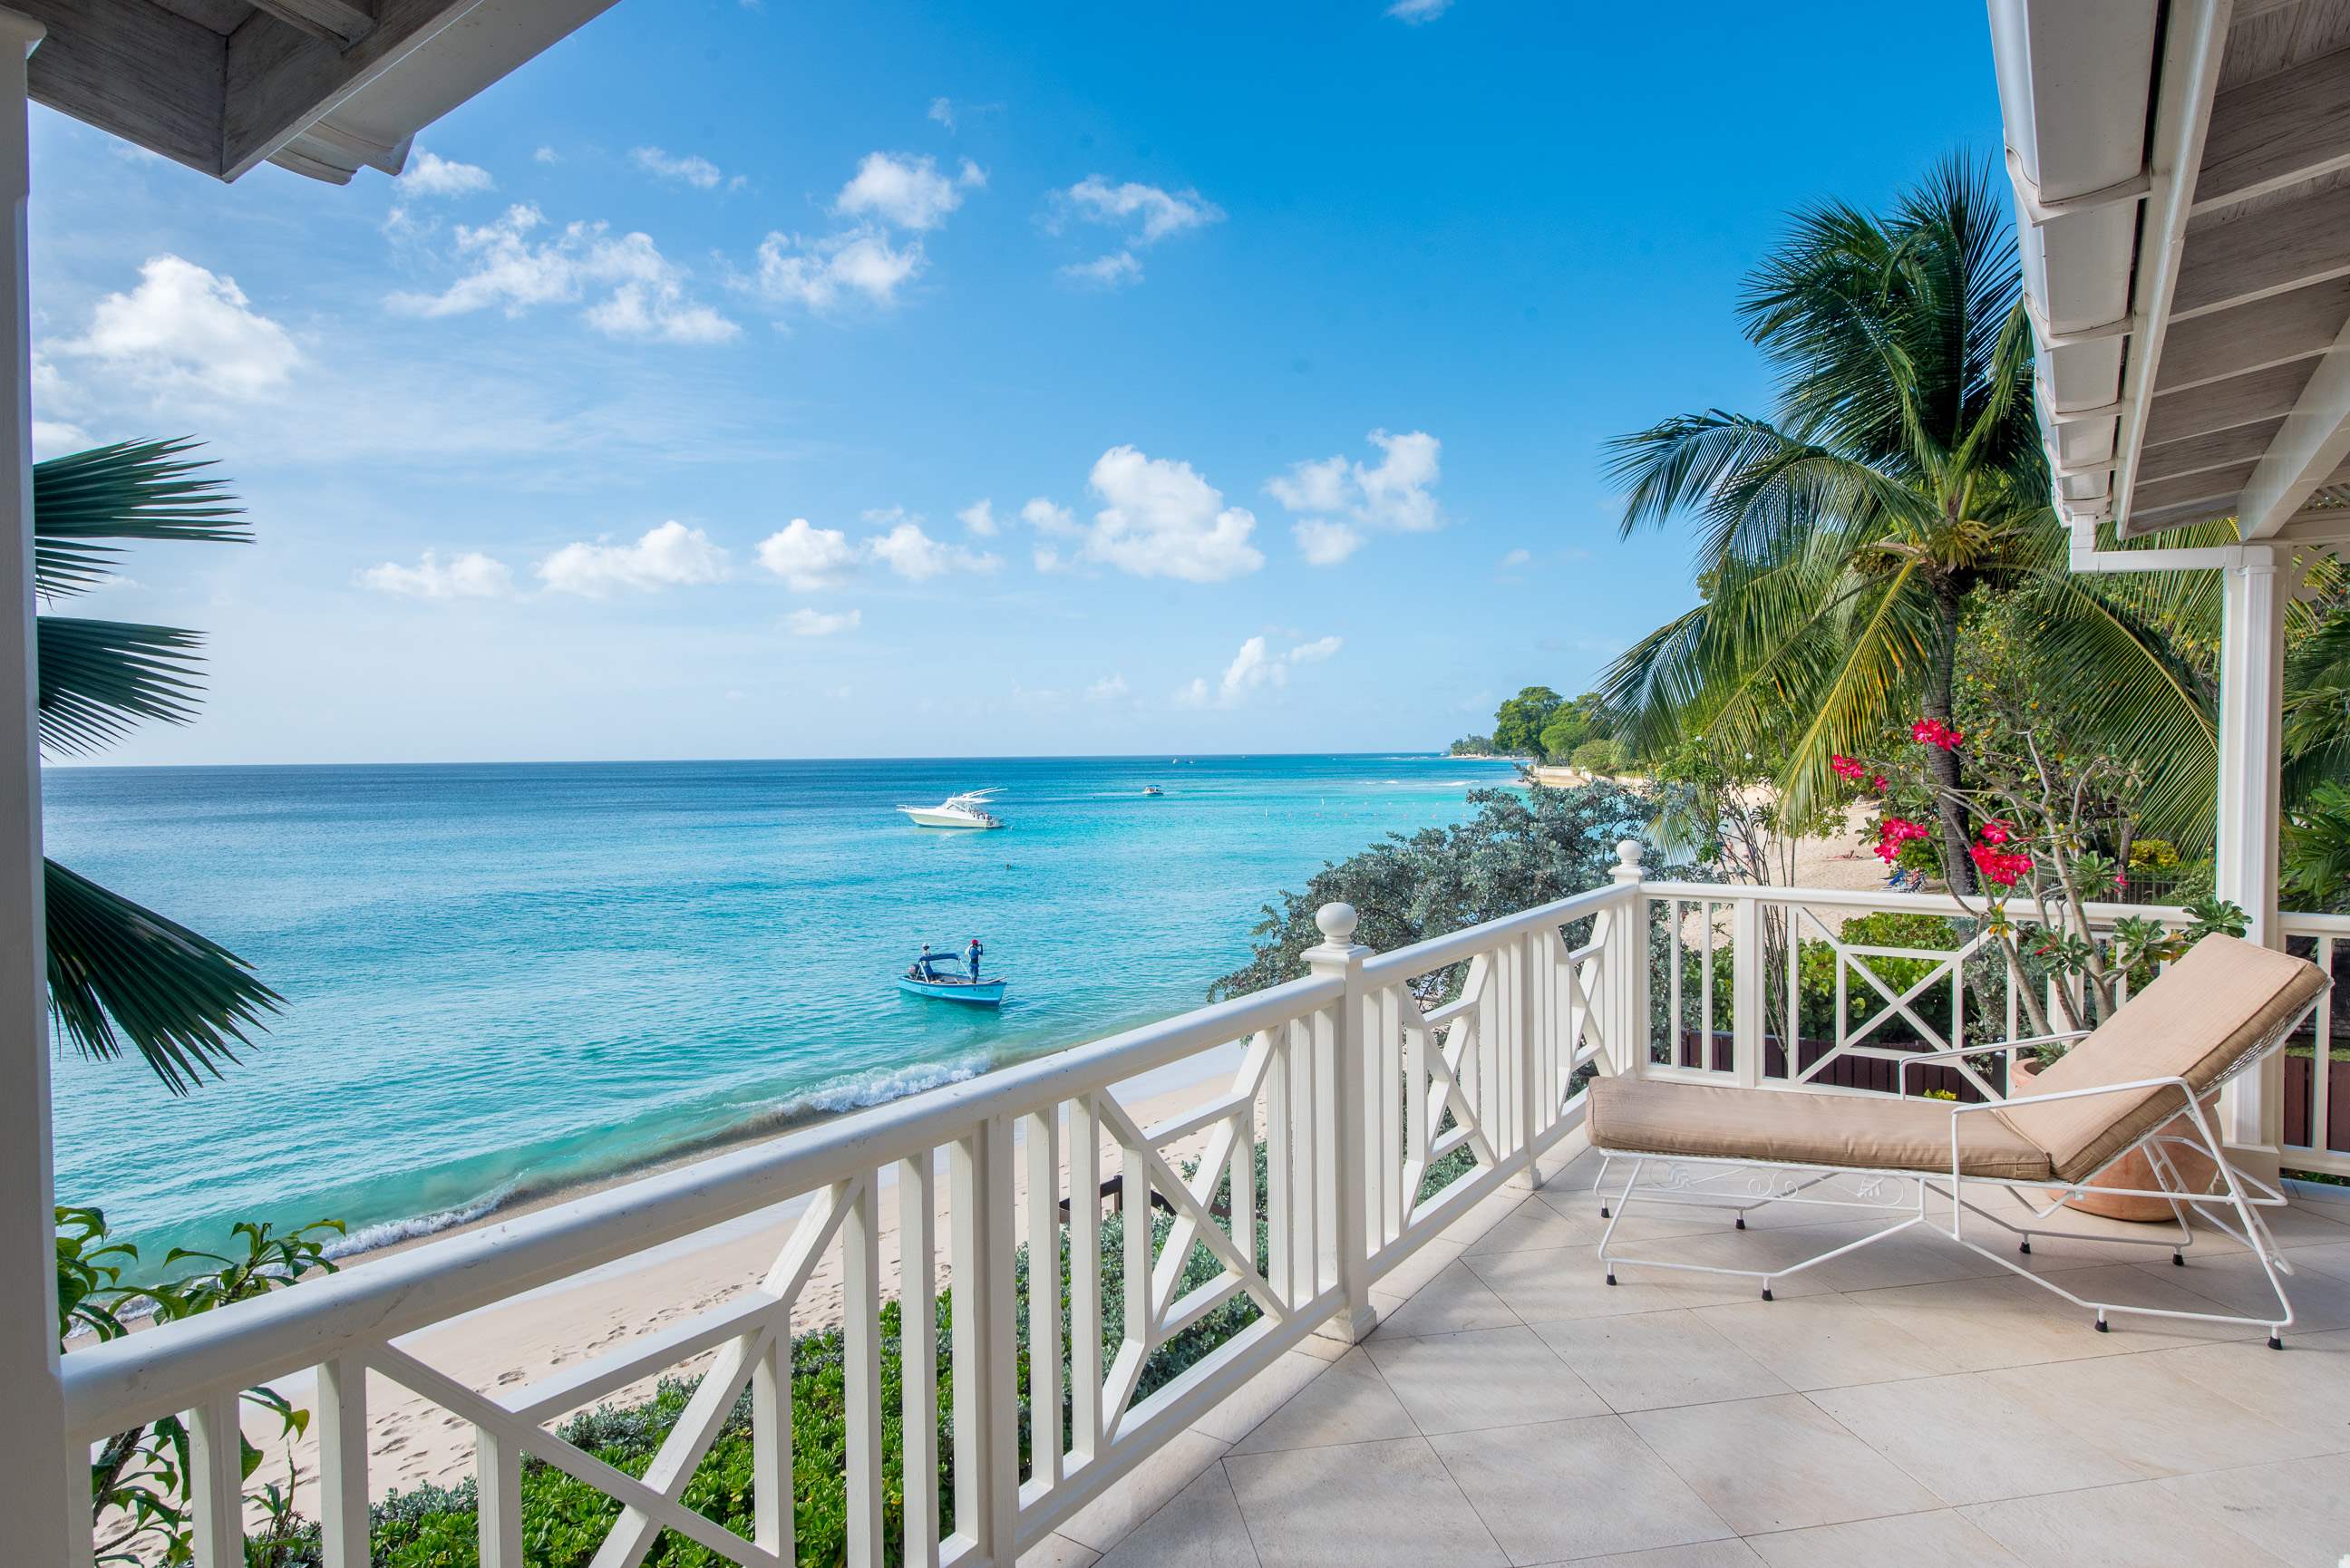 Westhaven, 4 bedroom villa in St. James & West Coast, Barbados Photo #4